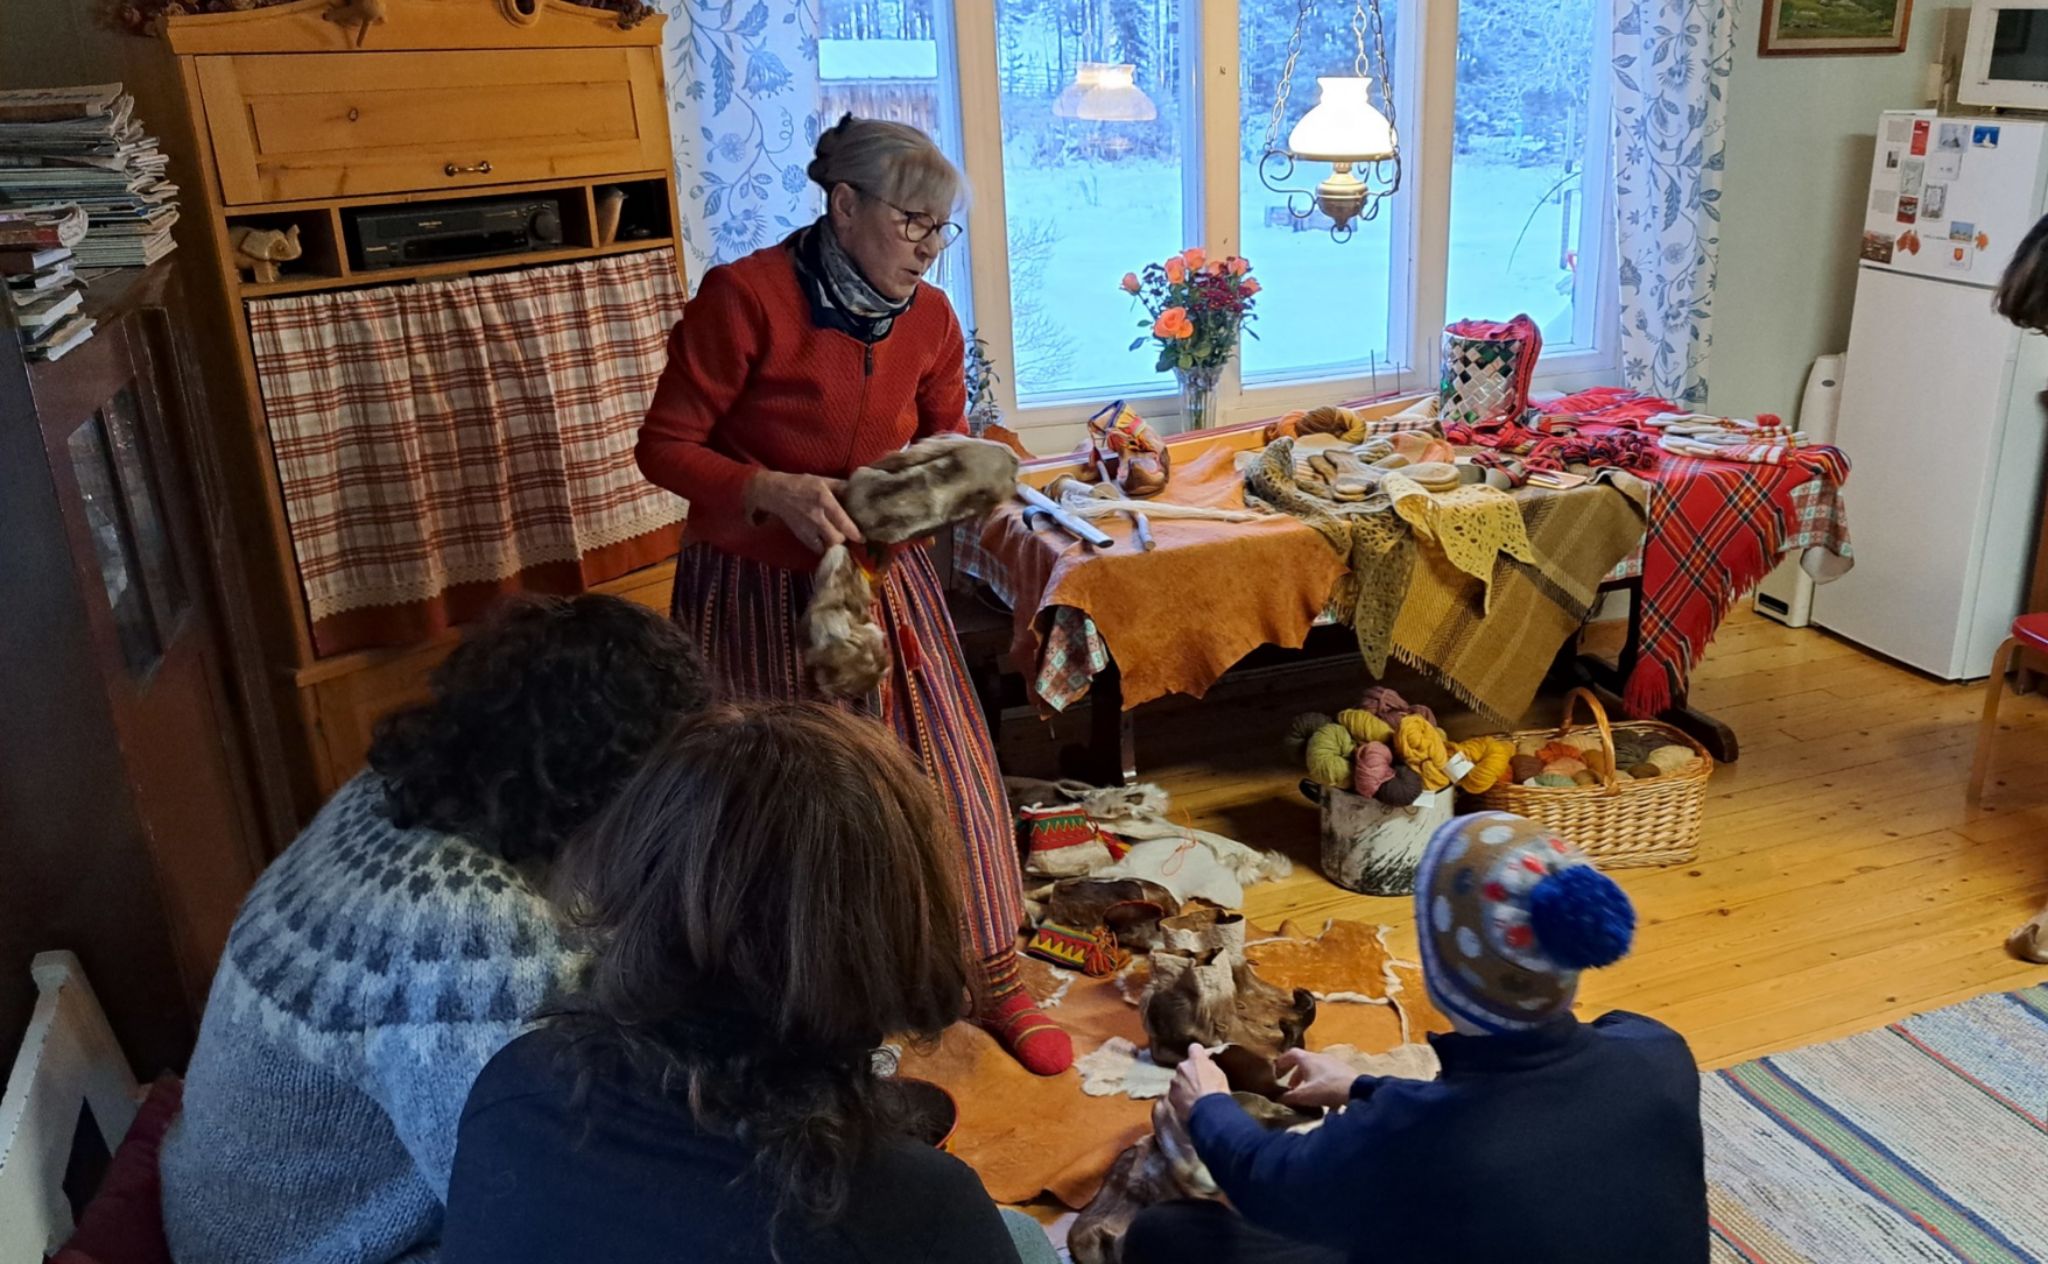 Los descendientes de los samis viven de forma integrada en los distintos núcleos de población, y aunque visten de forma moderna, sí cuidan sus tradiciones y artesanías con orgullo. Como Tula, una mujer de Inari que cría renos, teje y fabrica los zapatos tradicionales sami con piel de reno.